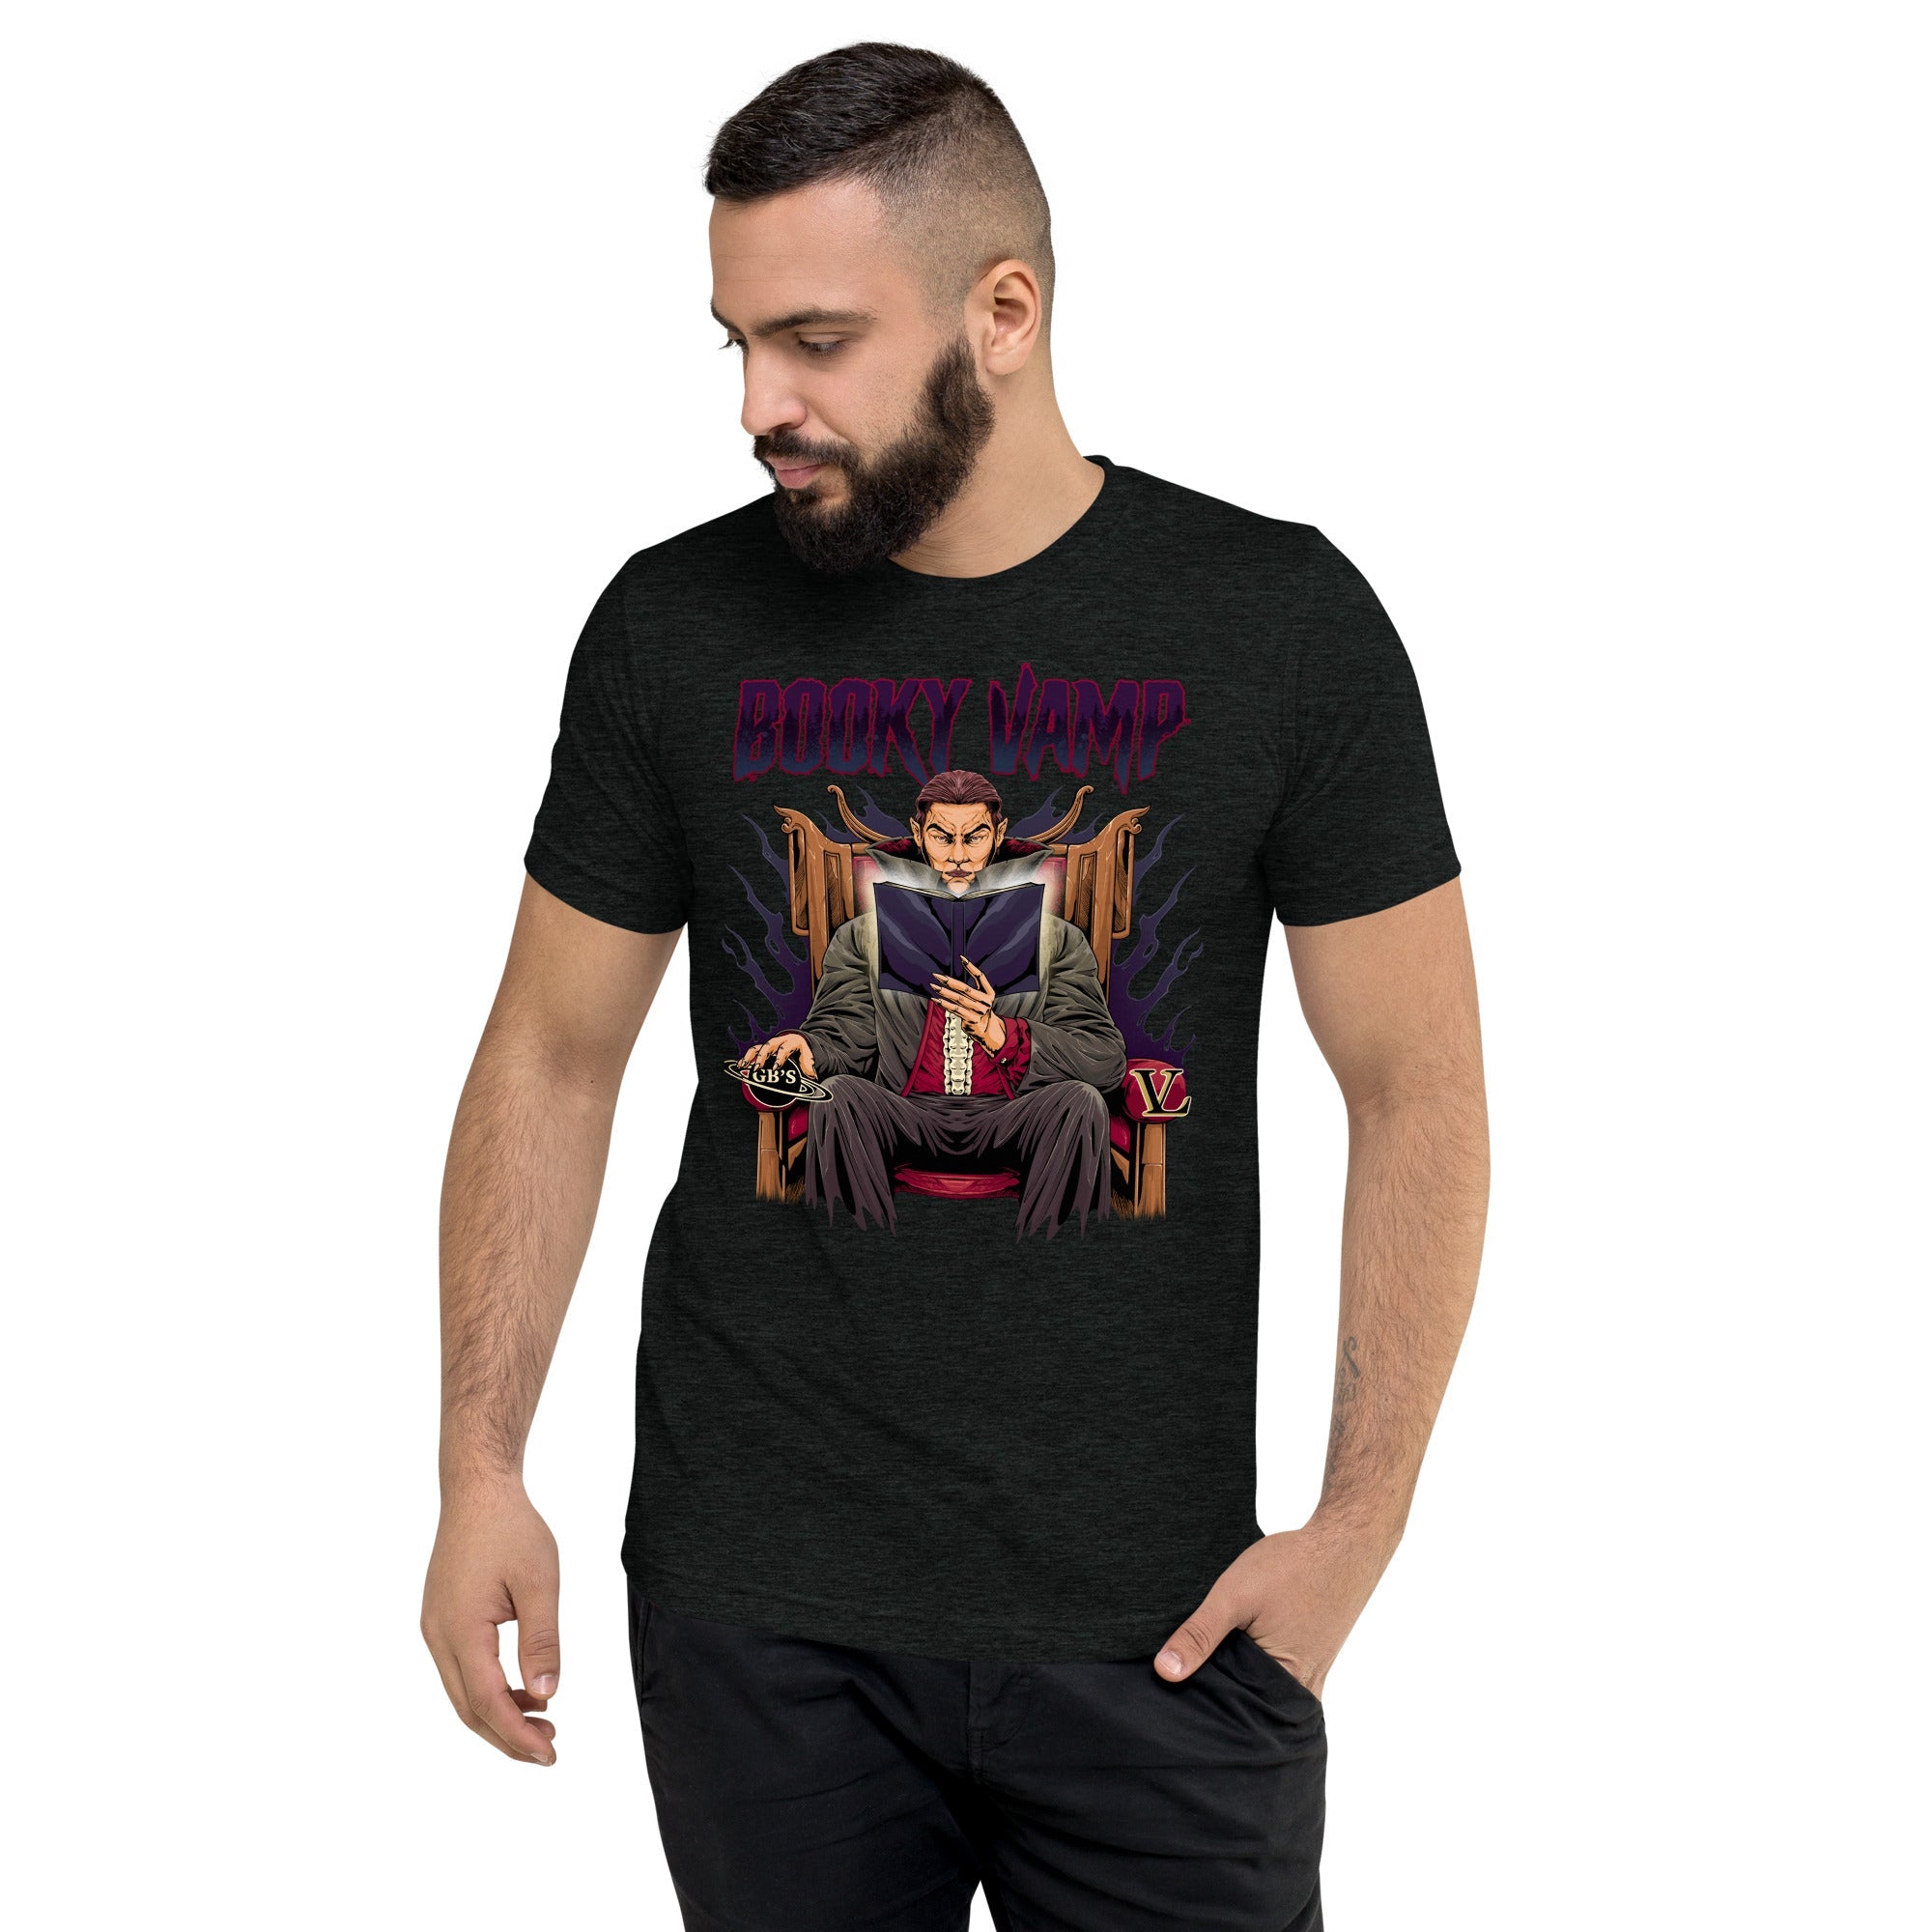 GBNY Charcoal-Black Triblend / XS Vamp Life X GBNY "Booky Vamp" T-shirt - Men's 2381652_6504